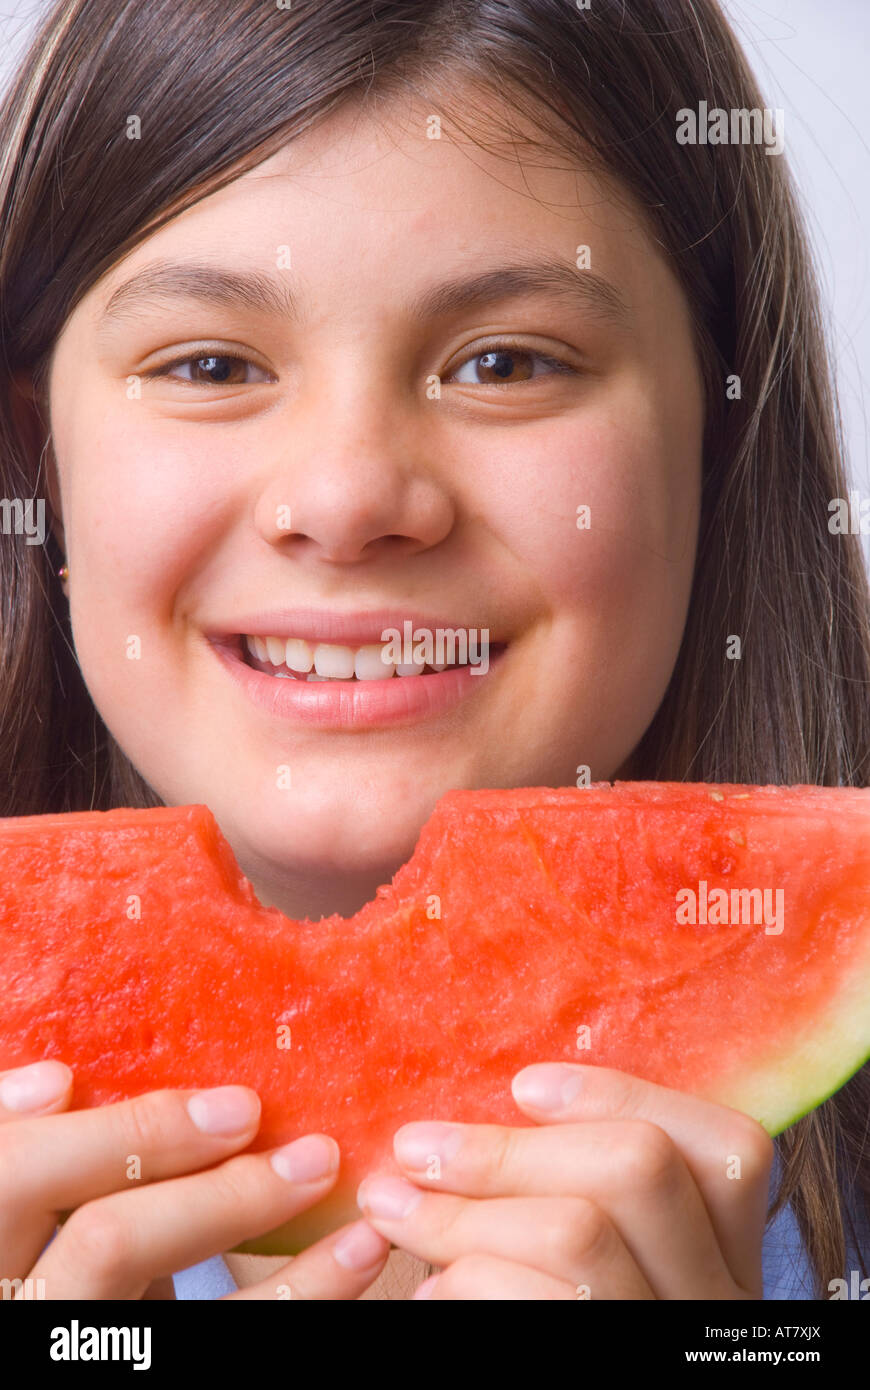 Giovane ragazza sorridente che mangia una fetta di anguria matura senza semi Foto Stock